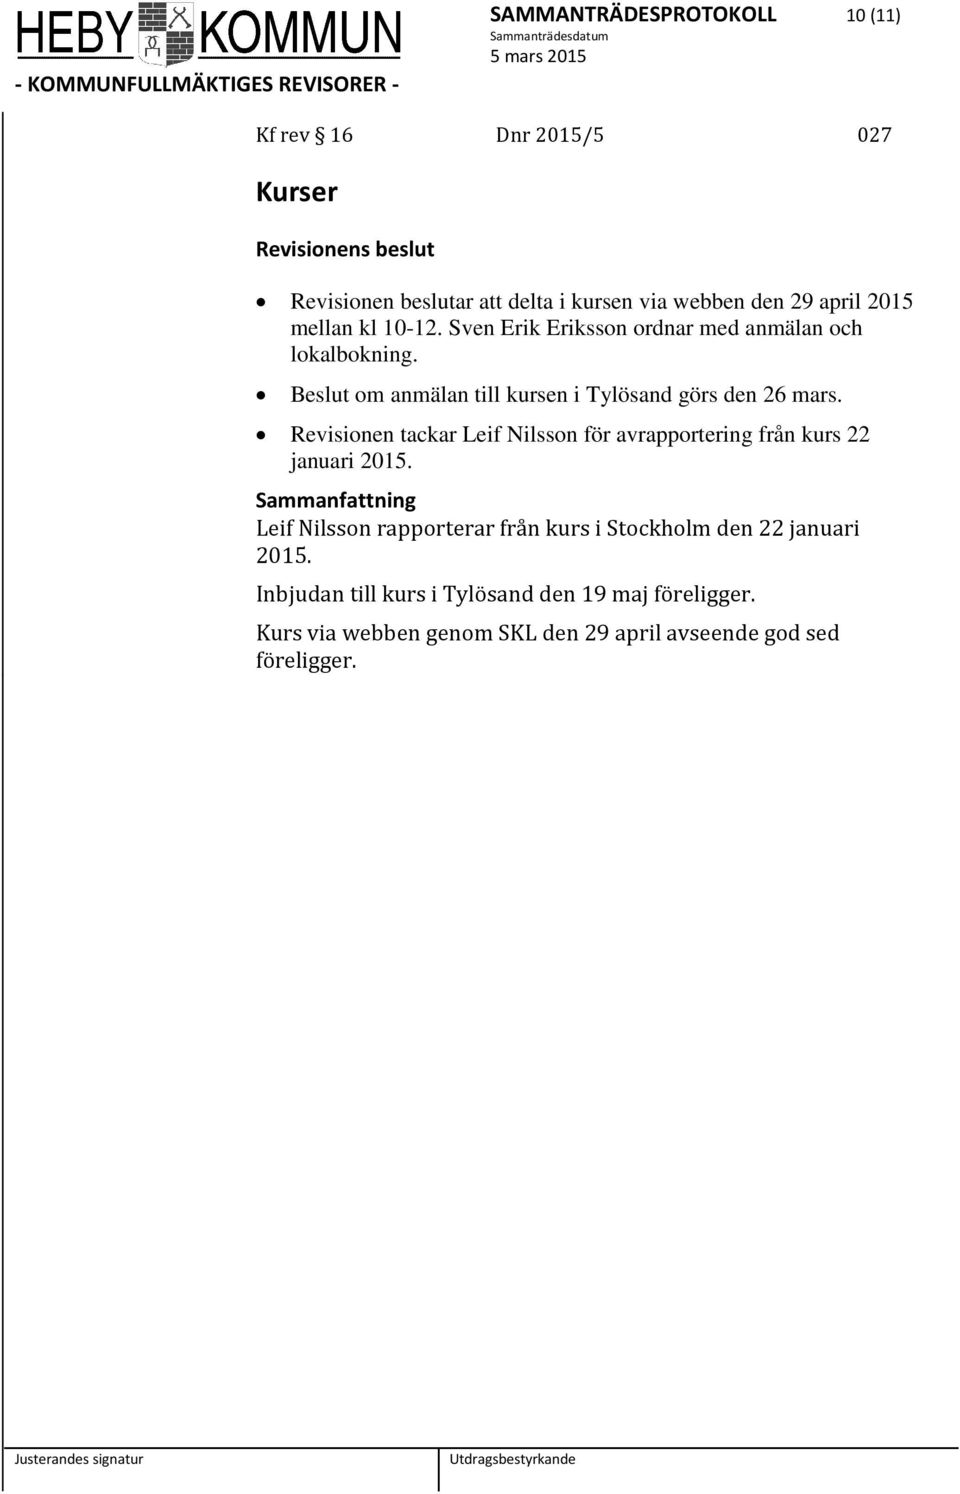 Revisionen tackar Leif Nilsson för avrapportering från kurs 22 januari 2015.